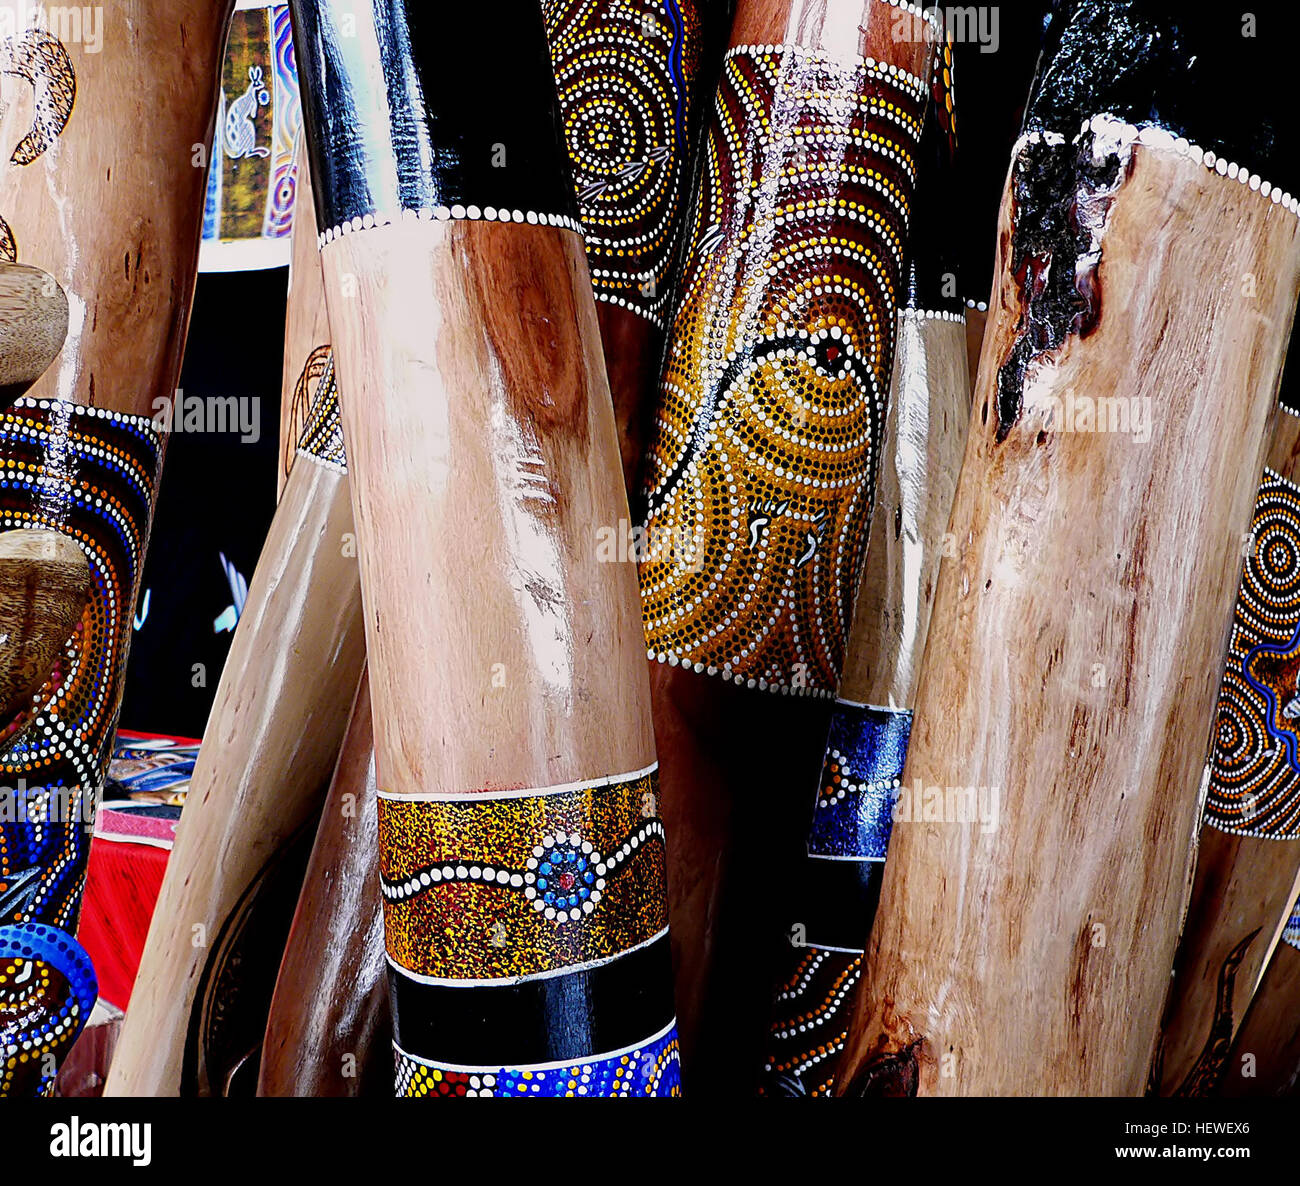 El didgeridoo es un instrumento de viento, desarrollado por los indígenas  australianos de Australia septentrional alrededor de 1.500 años, y todavía  en uso generalizado hoy en día tanto en Australia y en